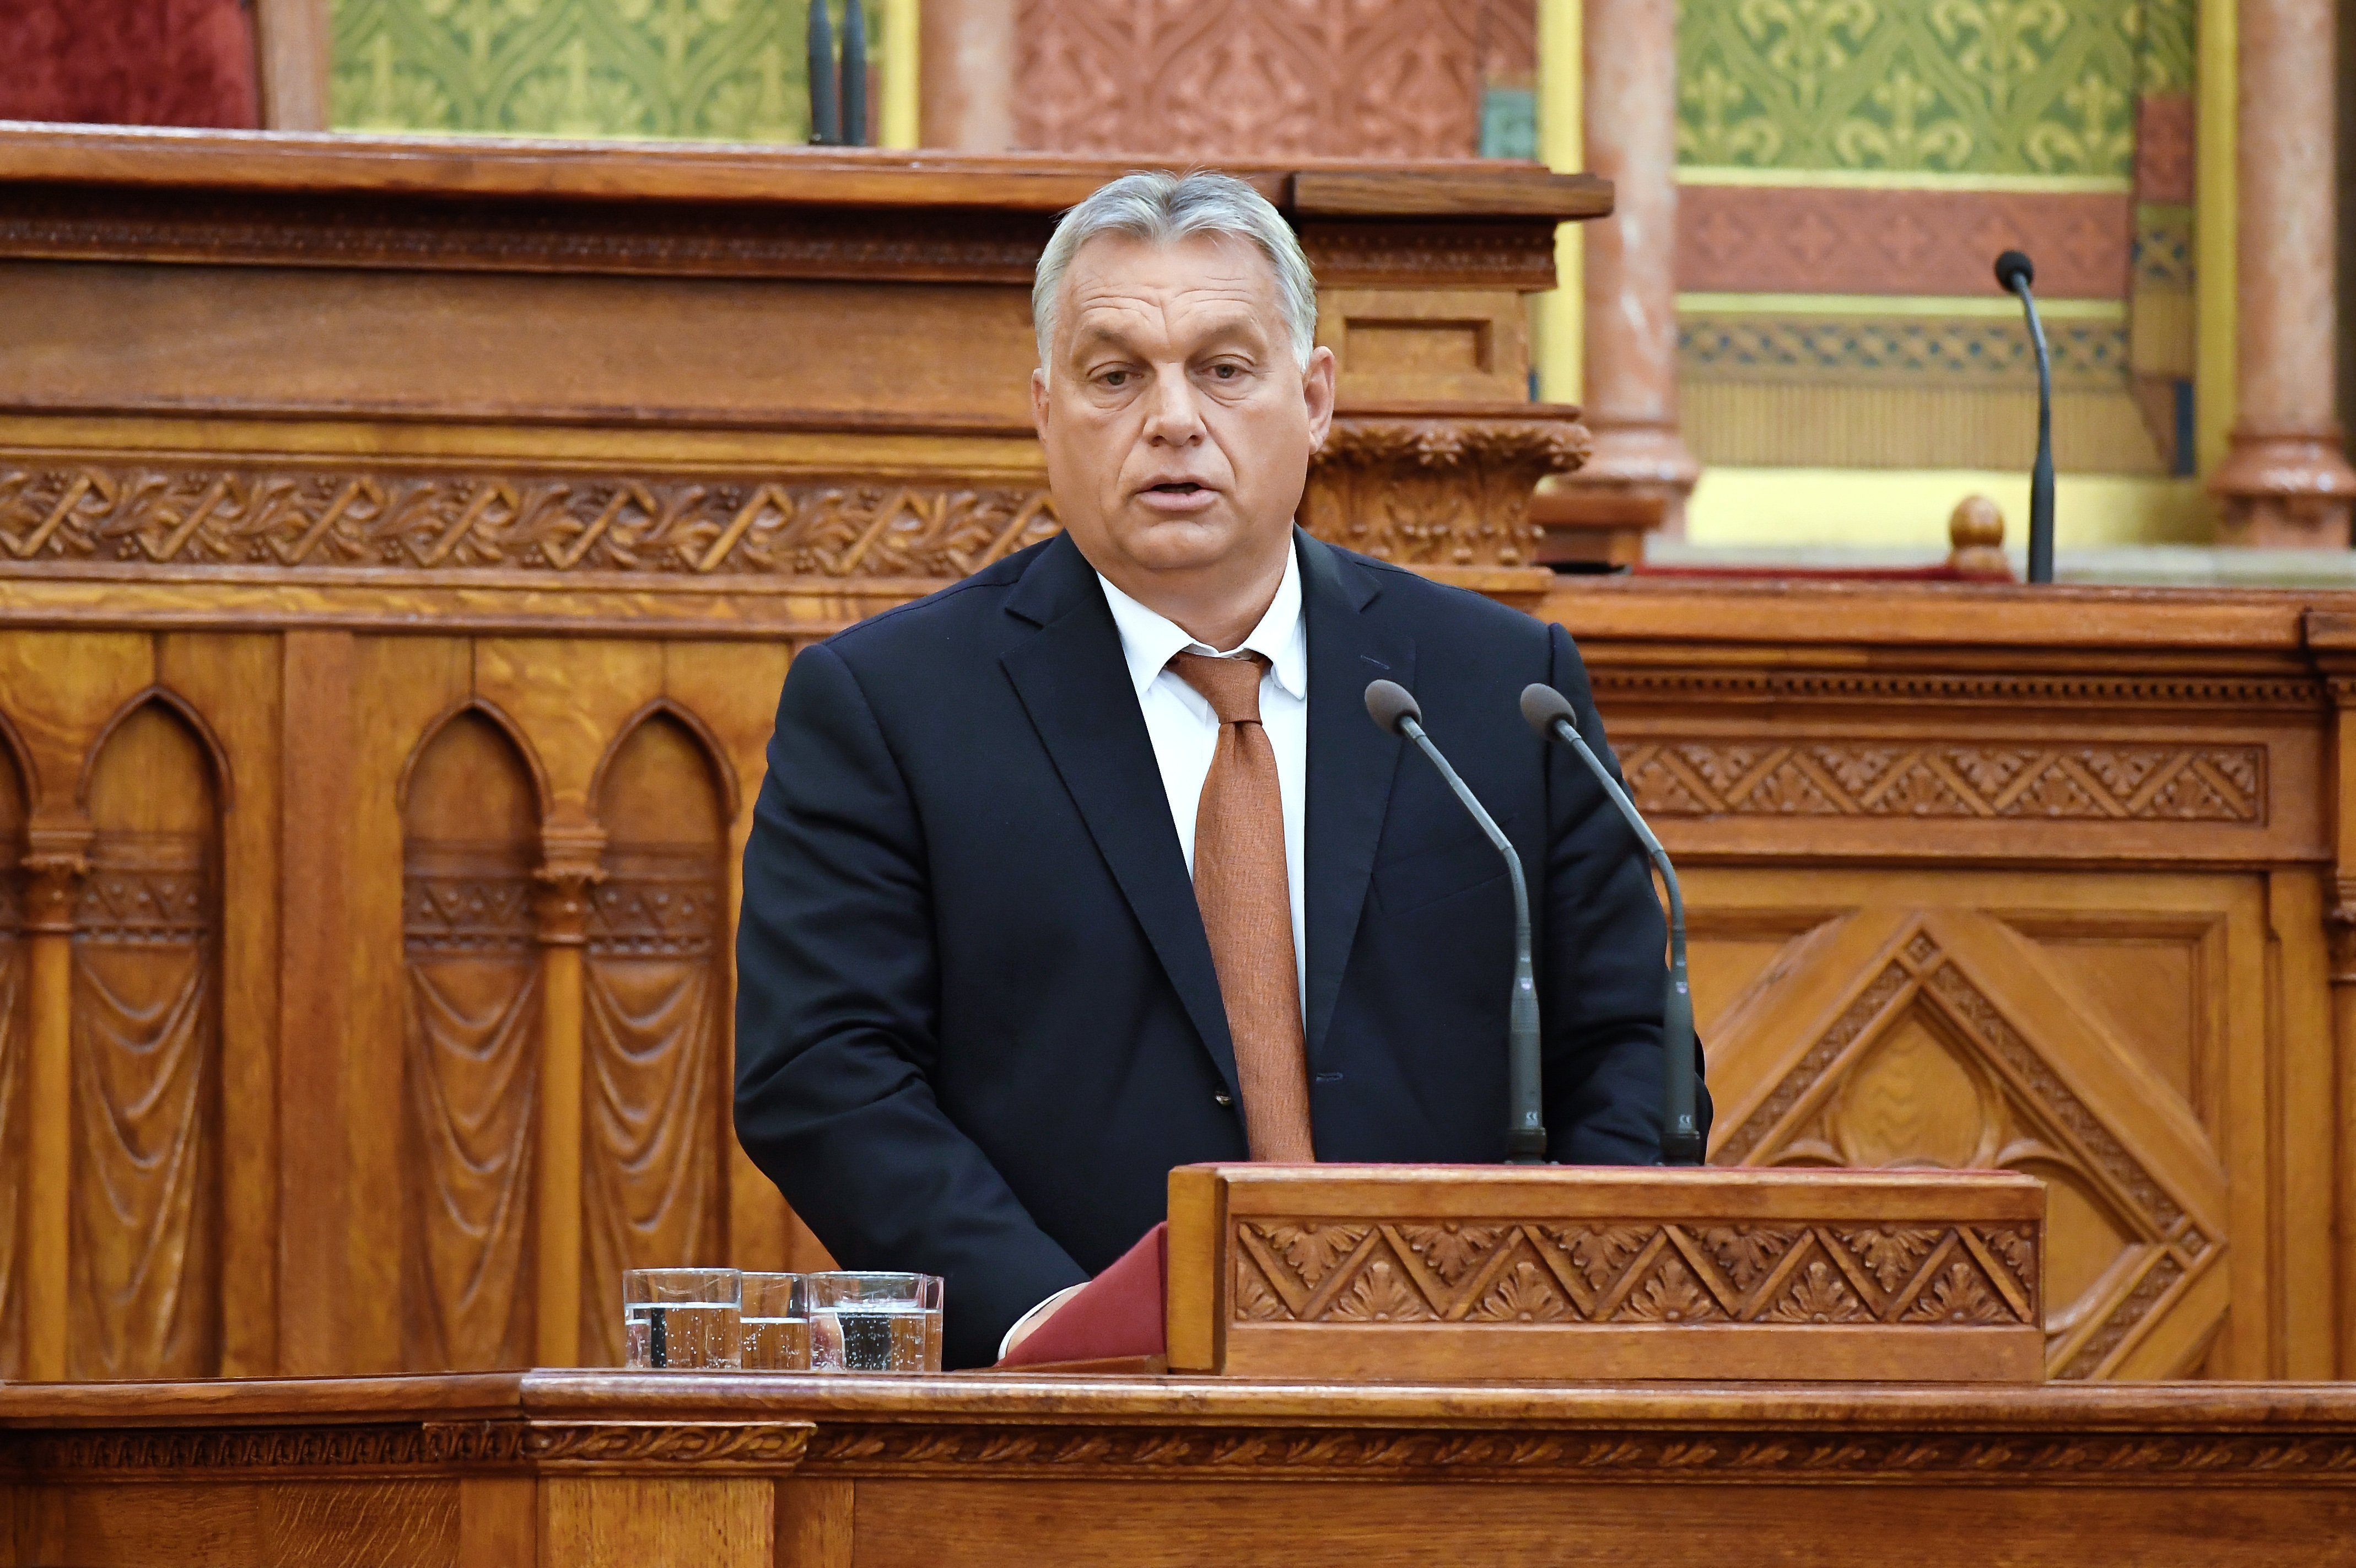 Welche Ziele hat Orbán bisher in seinen Reden als frischgewählter Ministerpräsident formuliert?